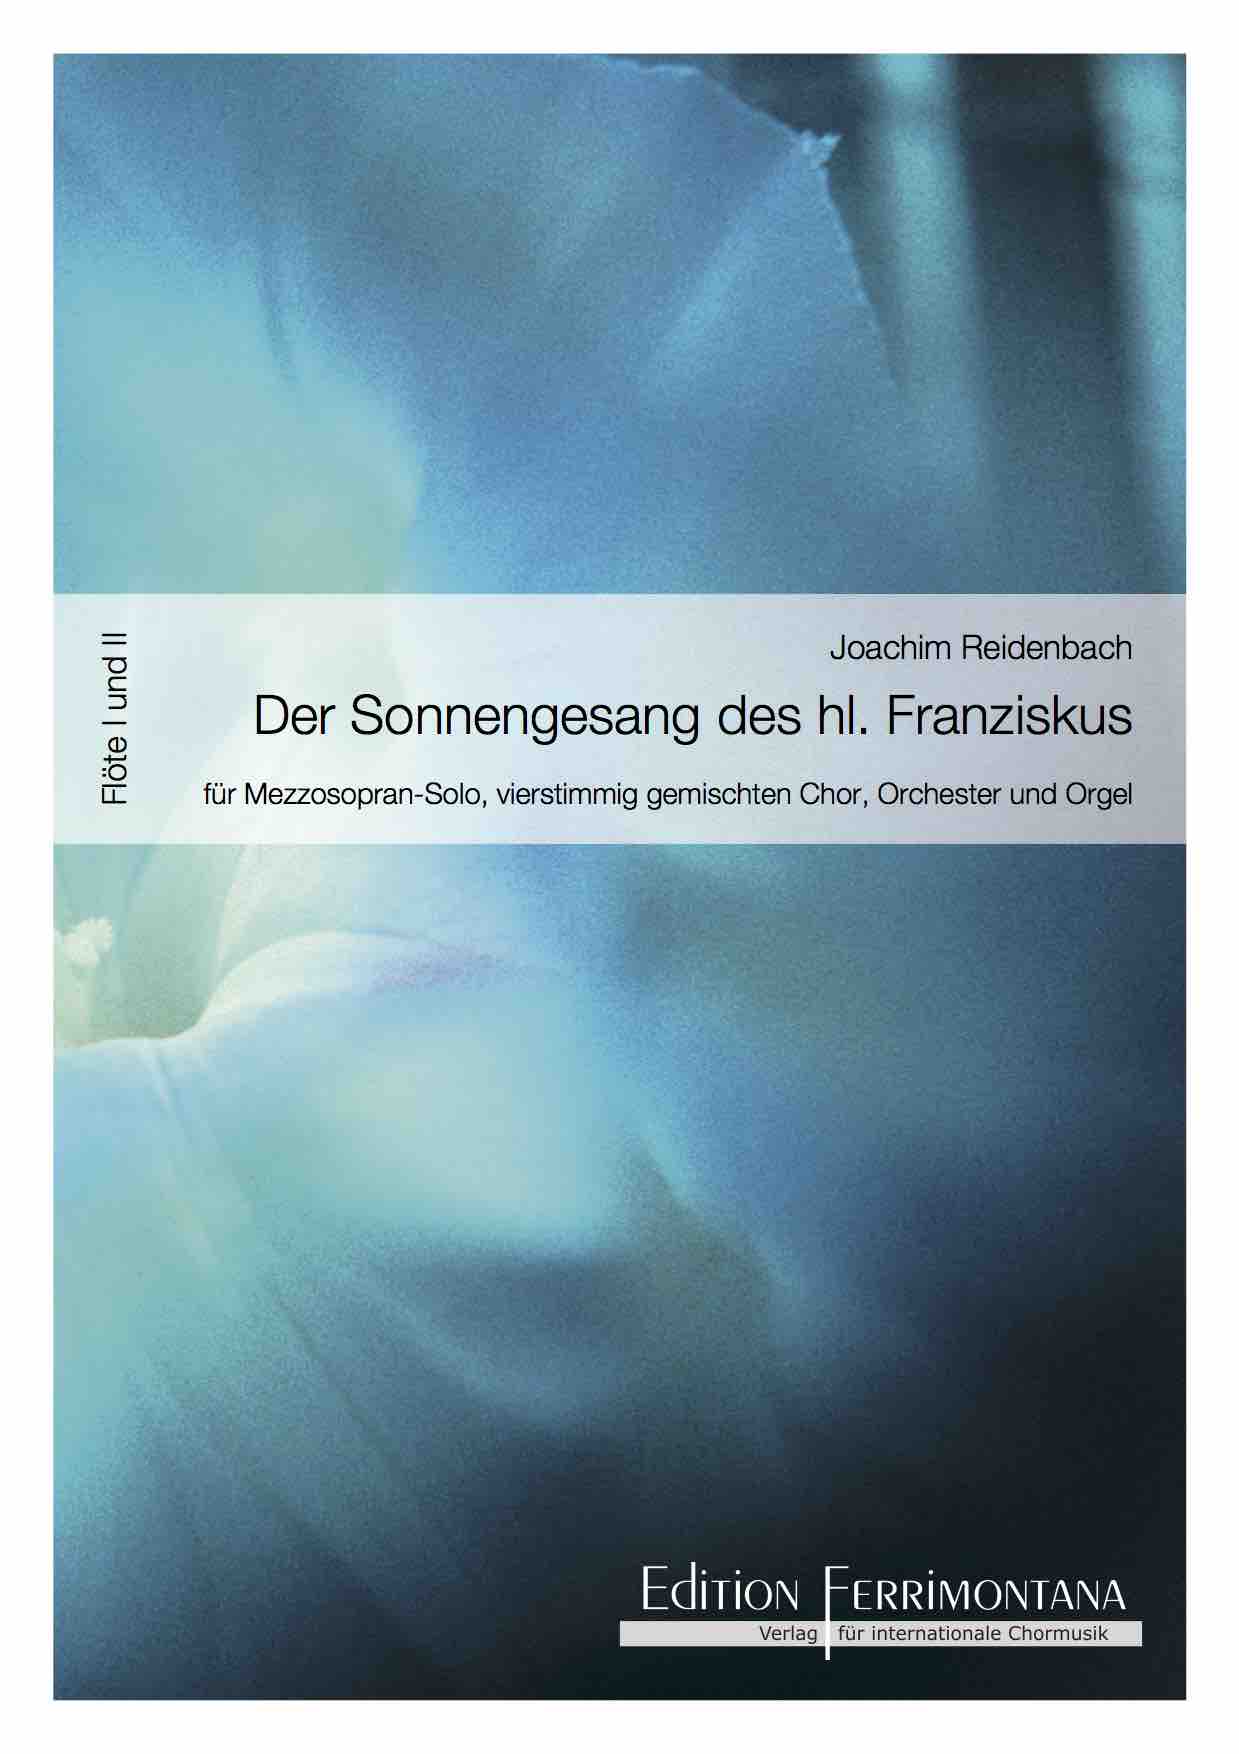 Reidenbach: Der Sonnengesang des heiligen Franziskus - Flöte I und II